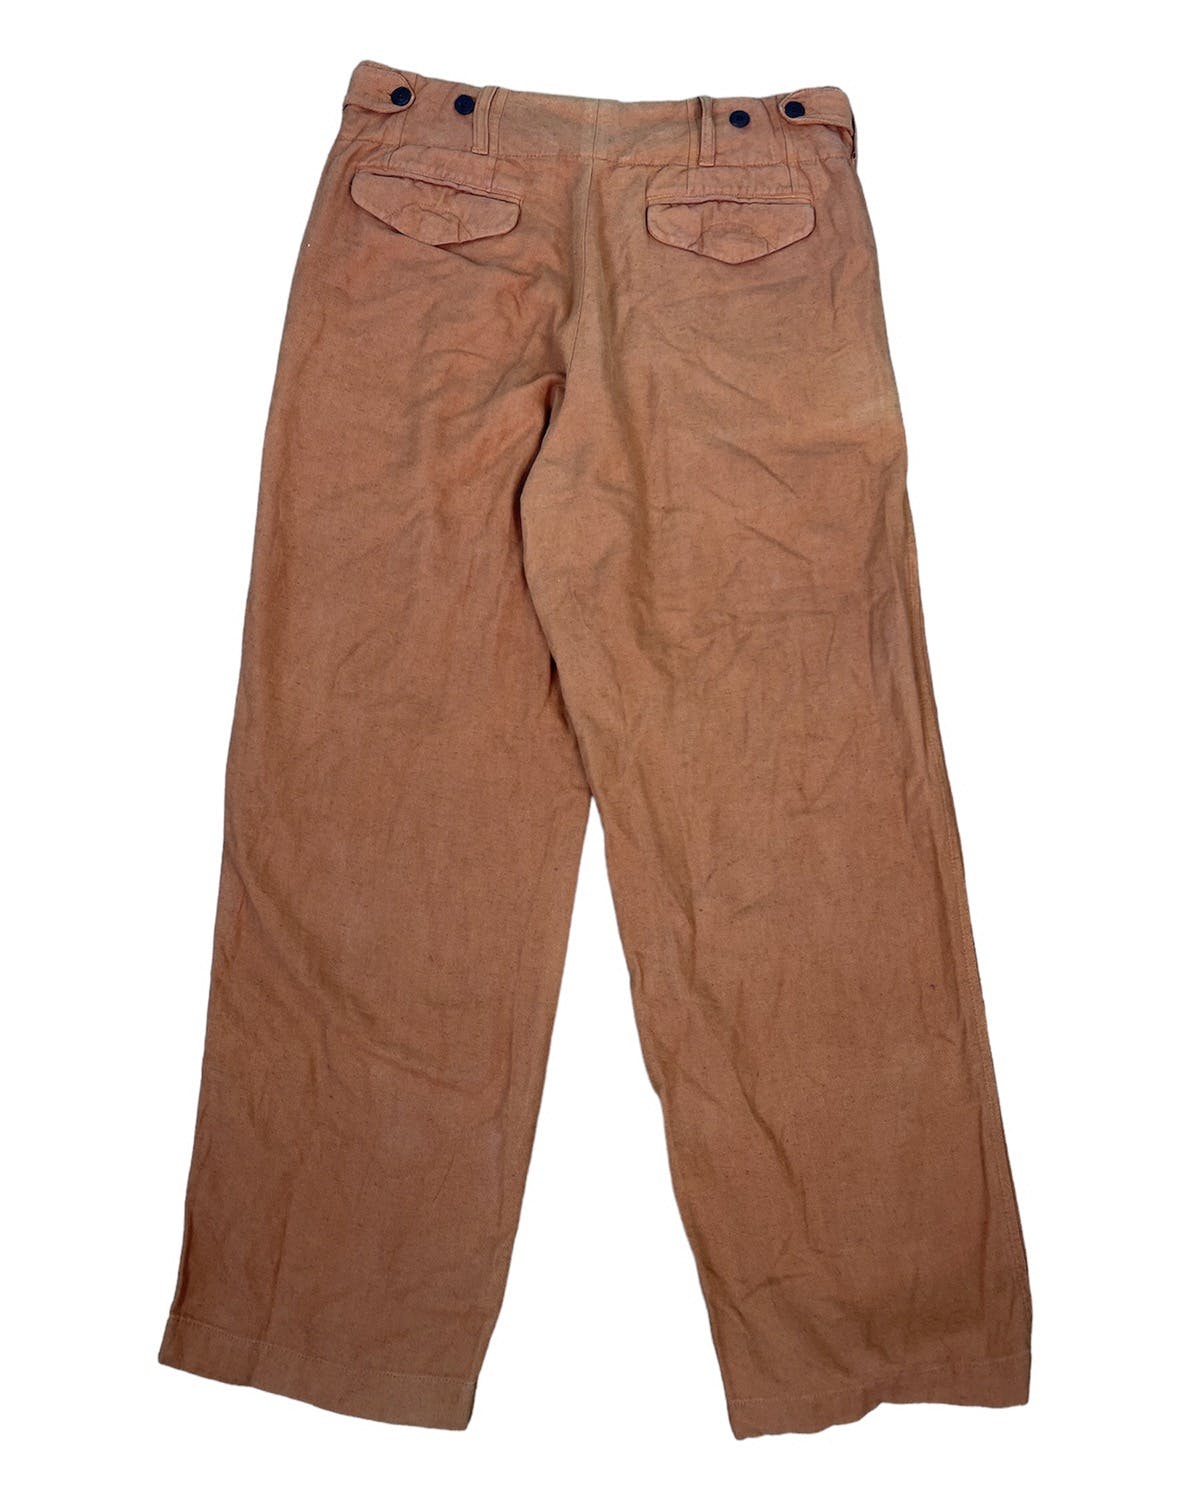 Vintage Dries Van Noten Pants - 2